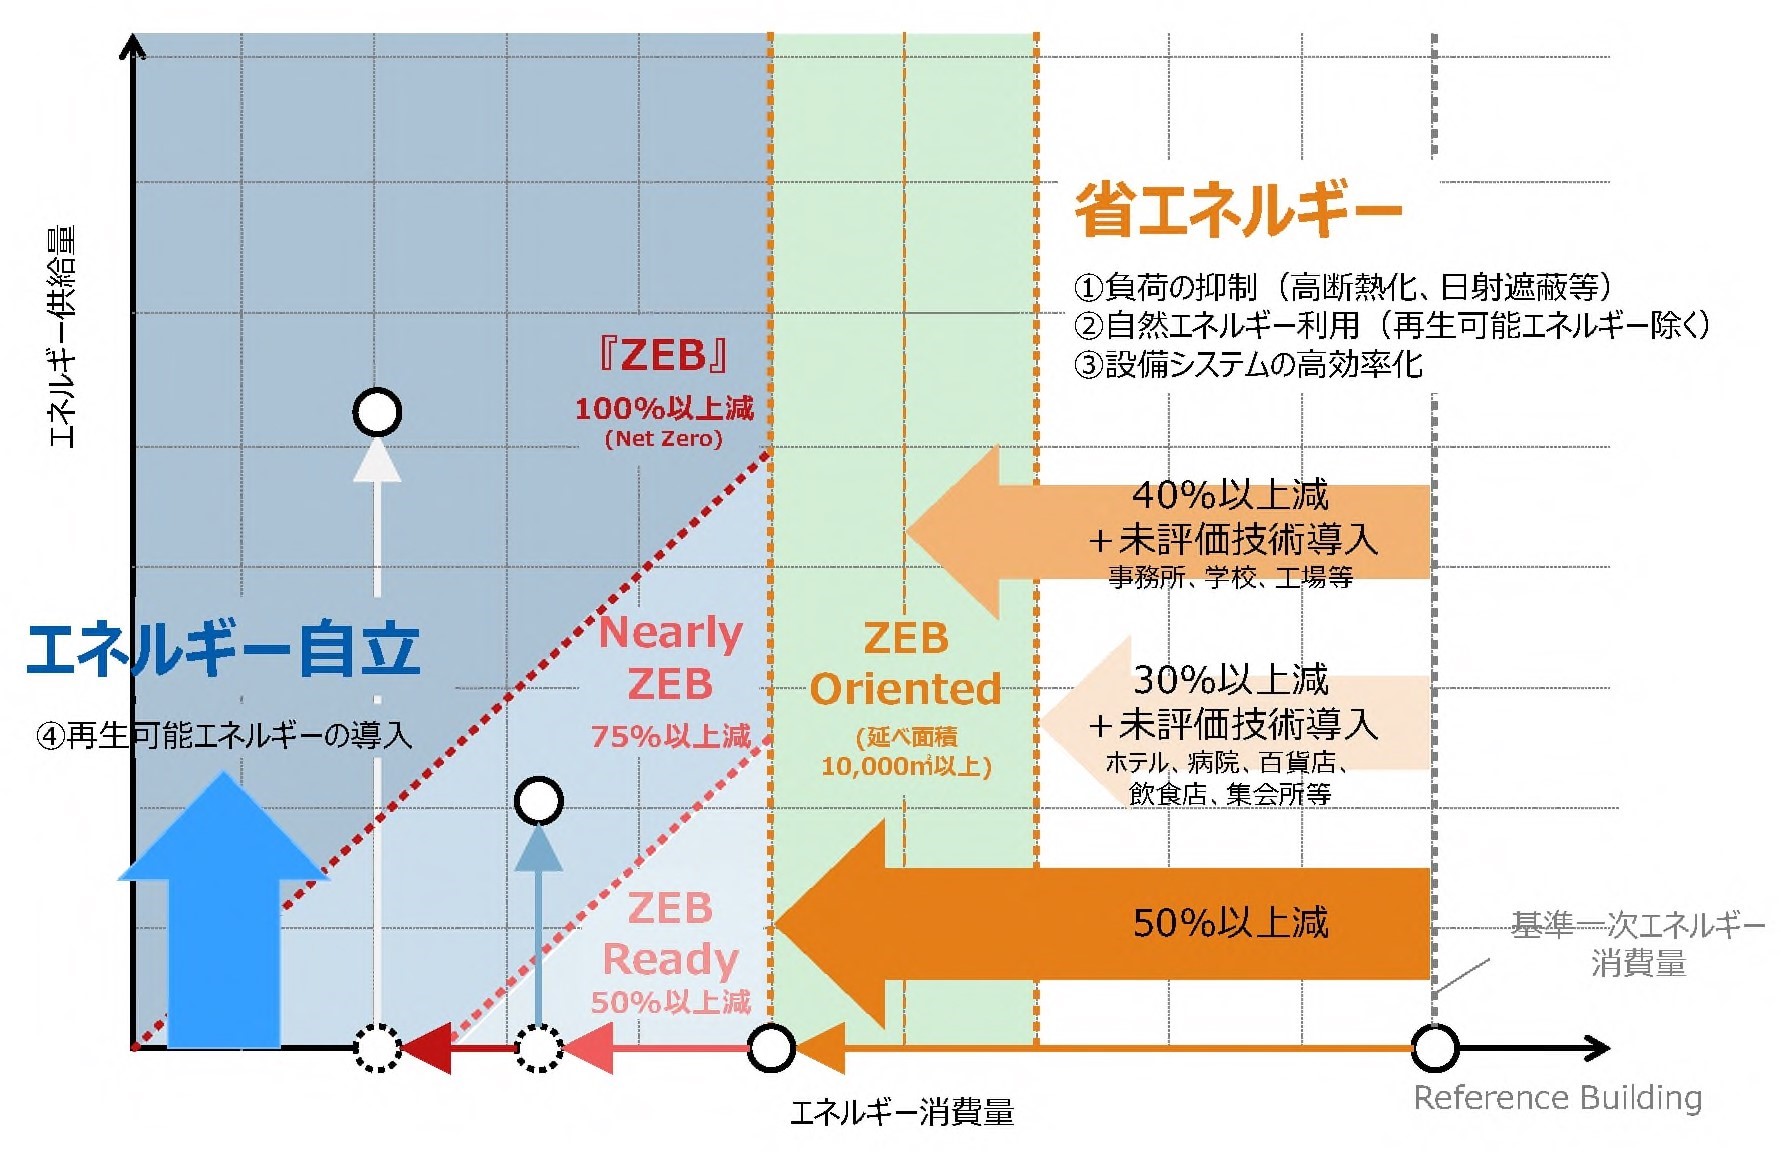 平成30年度ZEBロードマップ